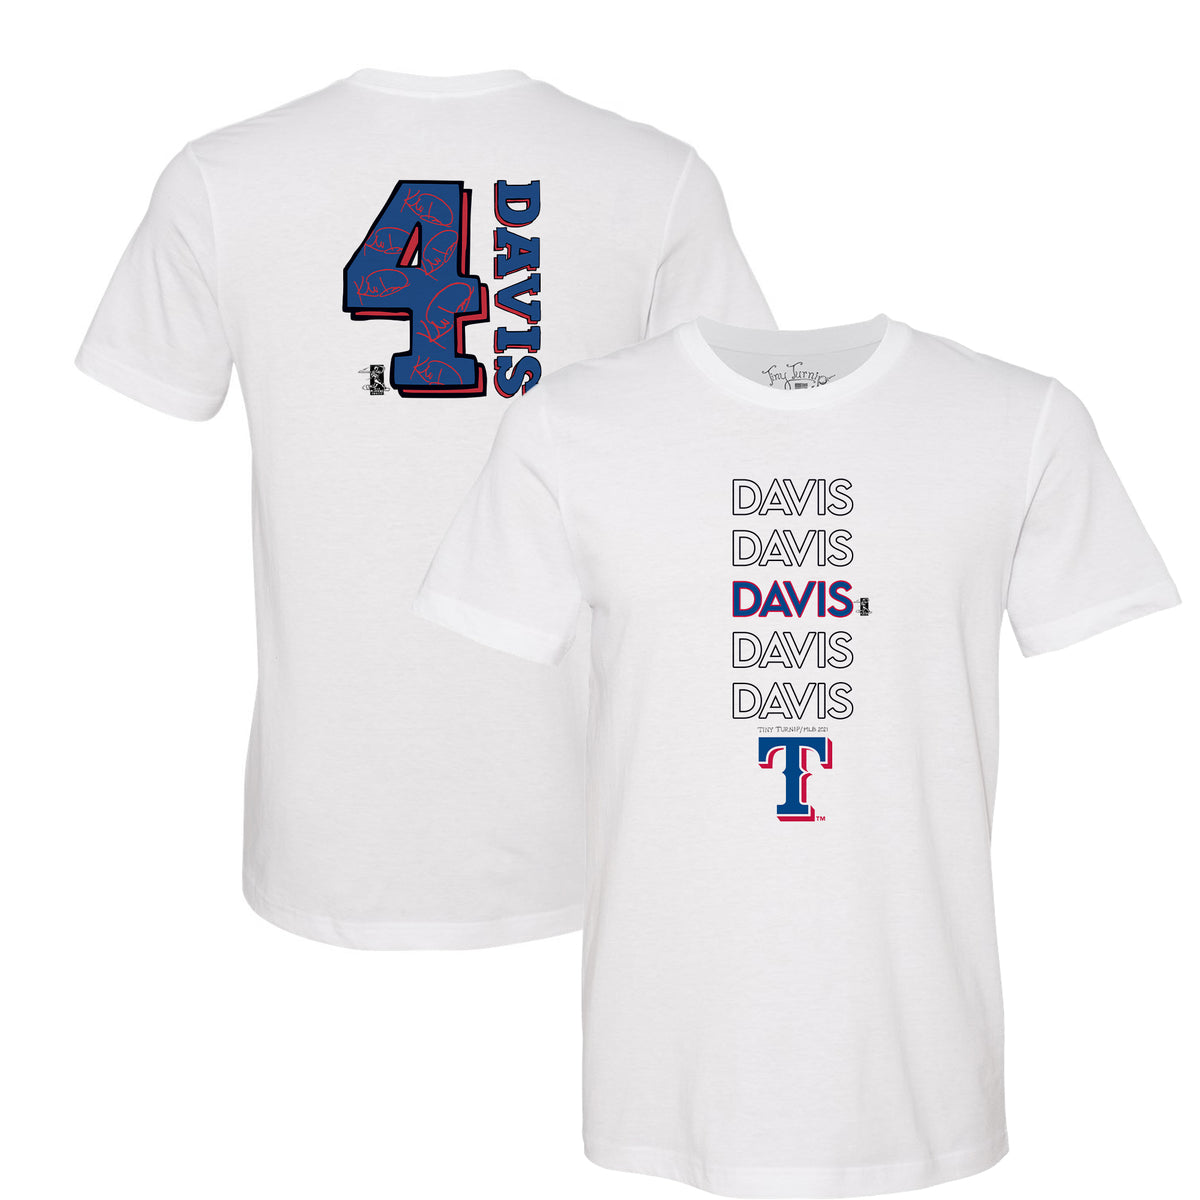 Khris Davis Jerseys, Khris Davis Shirt, Khris Davis Gear